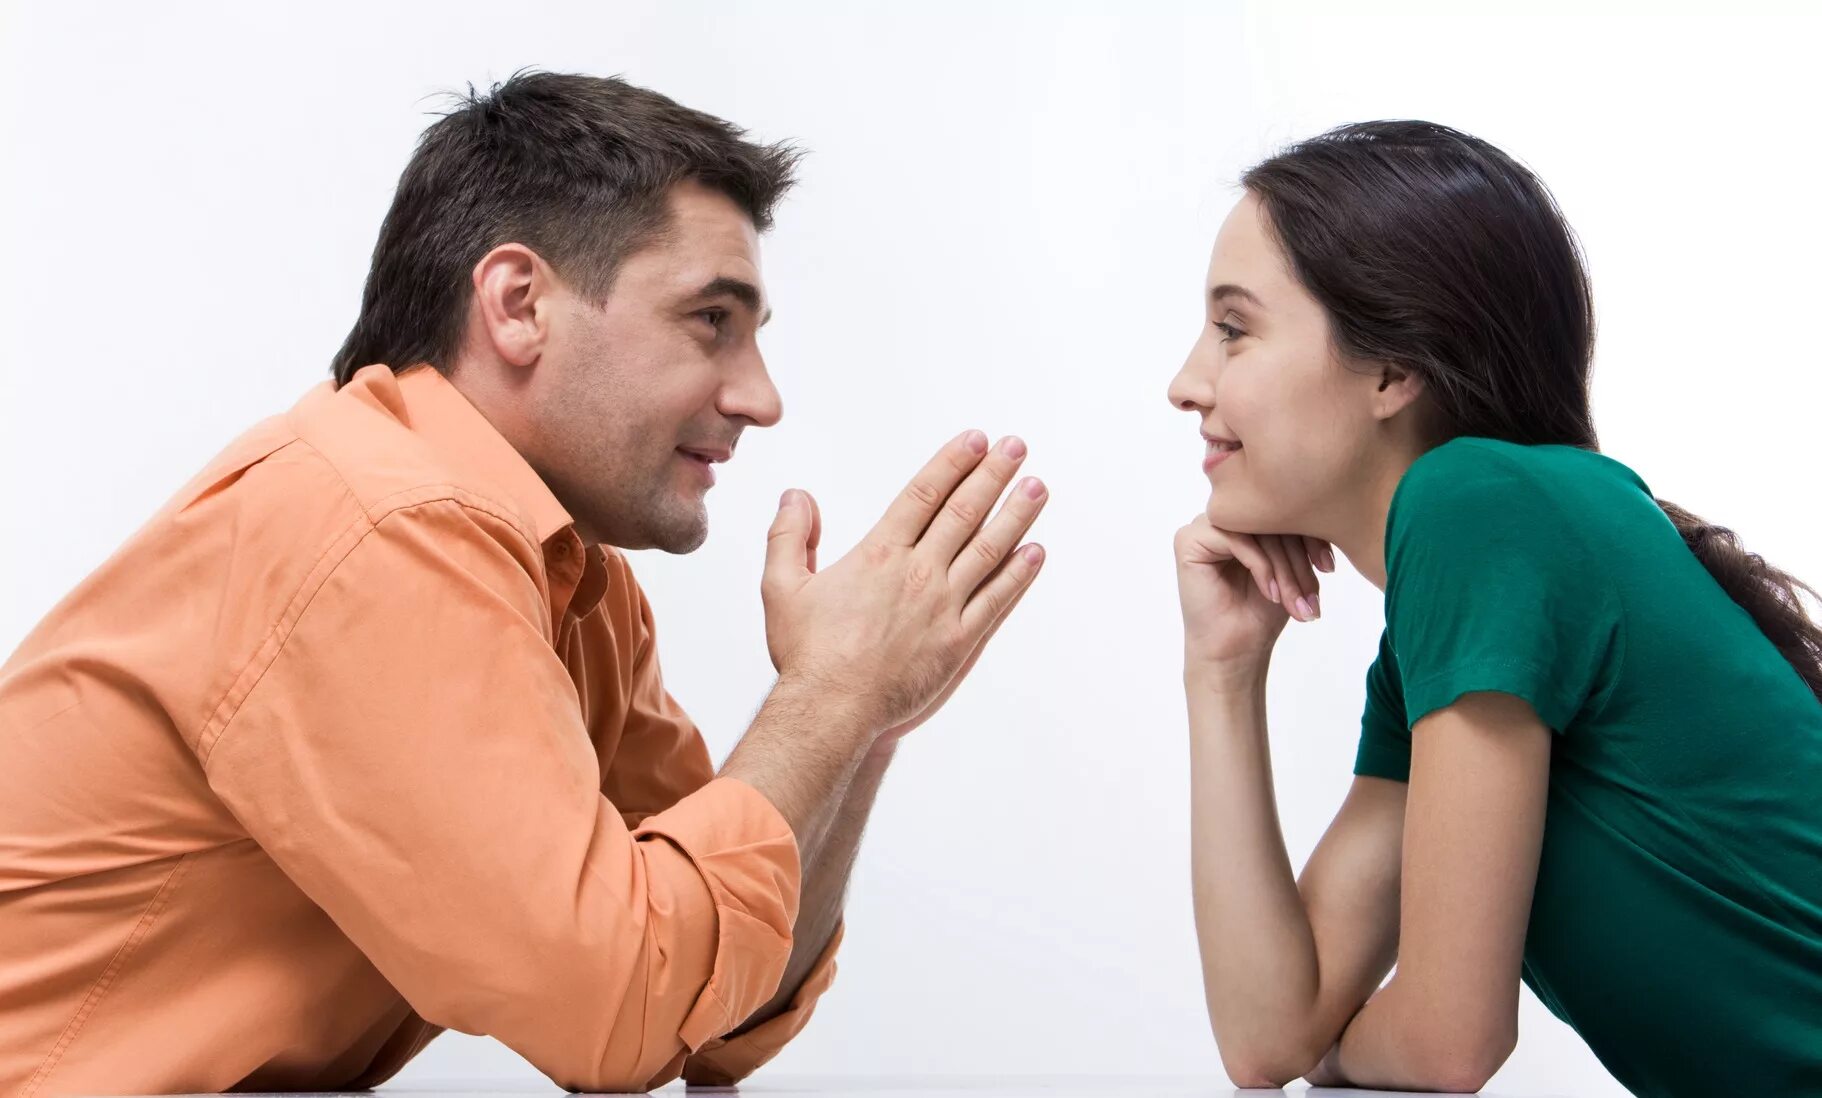 Женщины получают больше мужчин. Разговор между мужчиной и женщиной. Общение людей. Взаимопонимание в общении. Беседа мужчины и женщины.